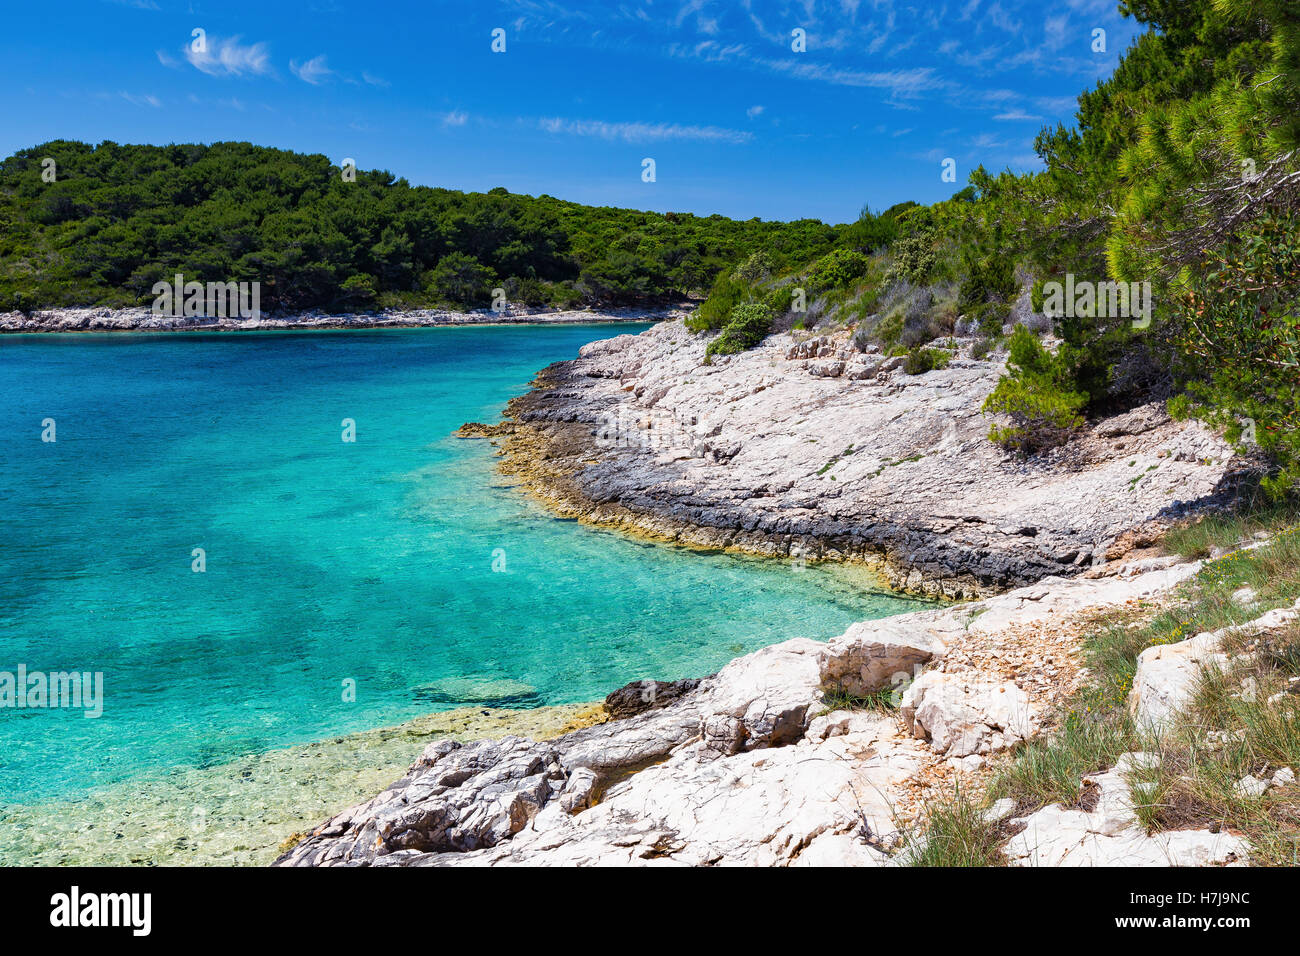 Costa rocciosa di una baia nelle isole Pakleni. Paklinski otoci. Acqua cristallina del mare Adriatico. Croazia. Europa. Foto Stock